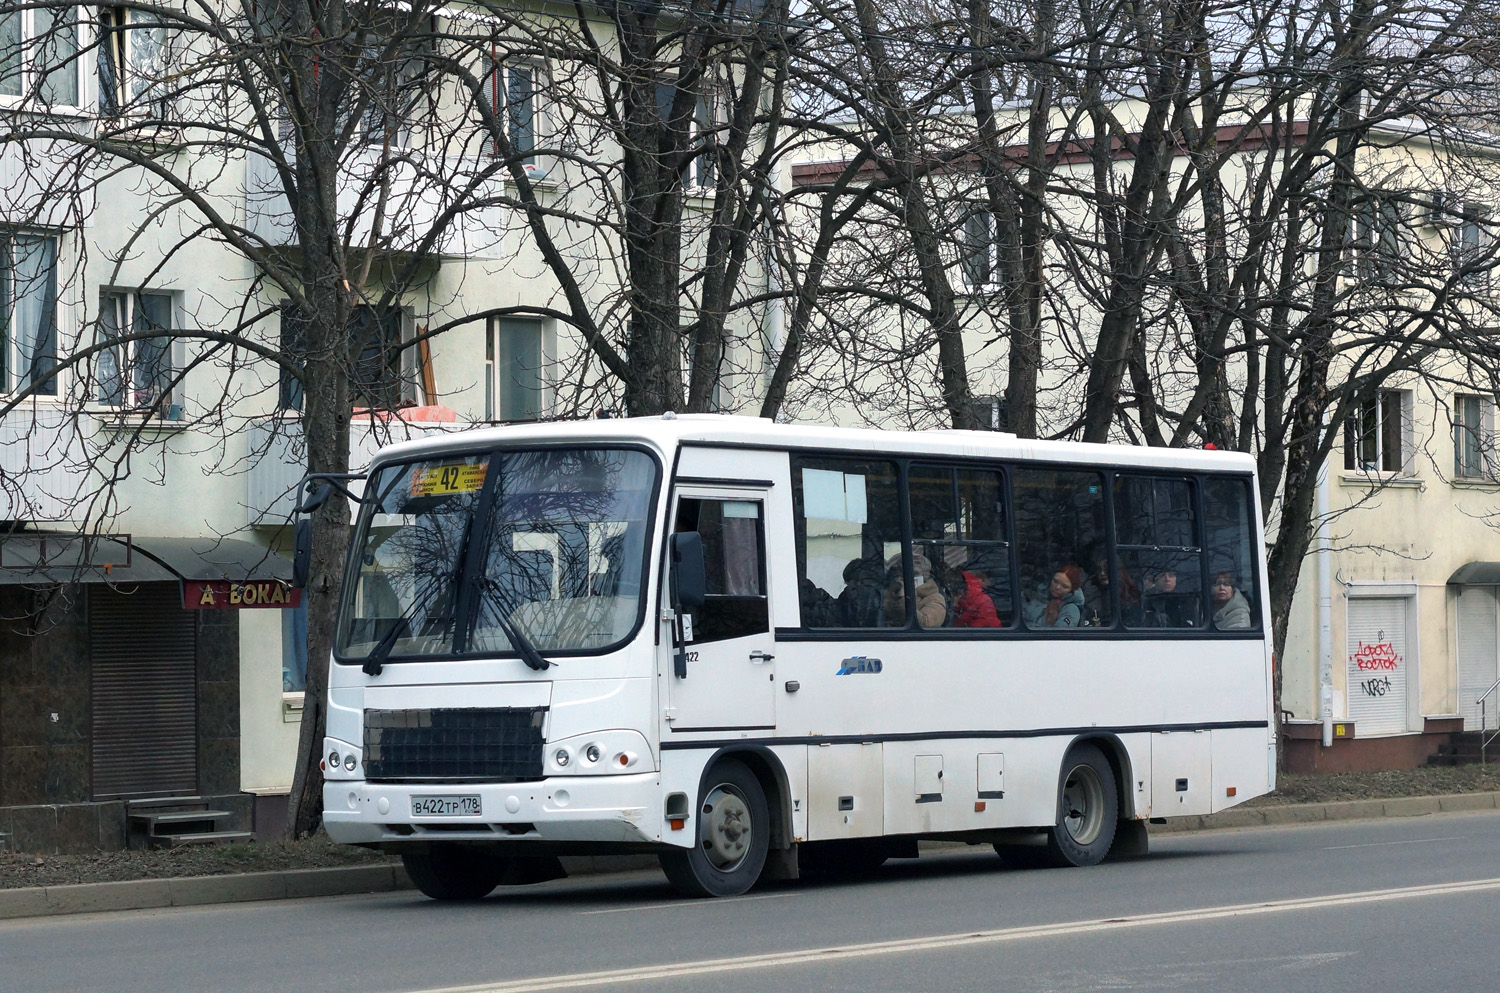 Ставропольский край, ПАЗ-320402-05 № В 422 ТР 178